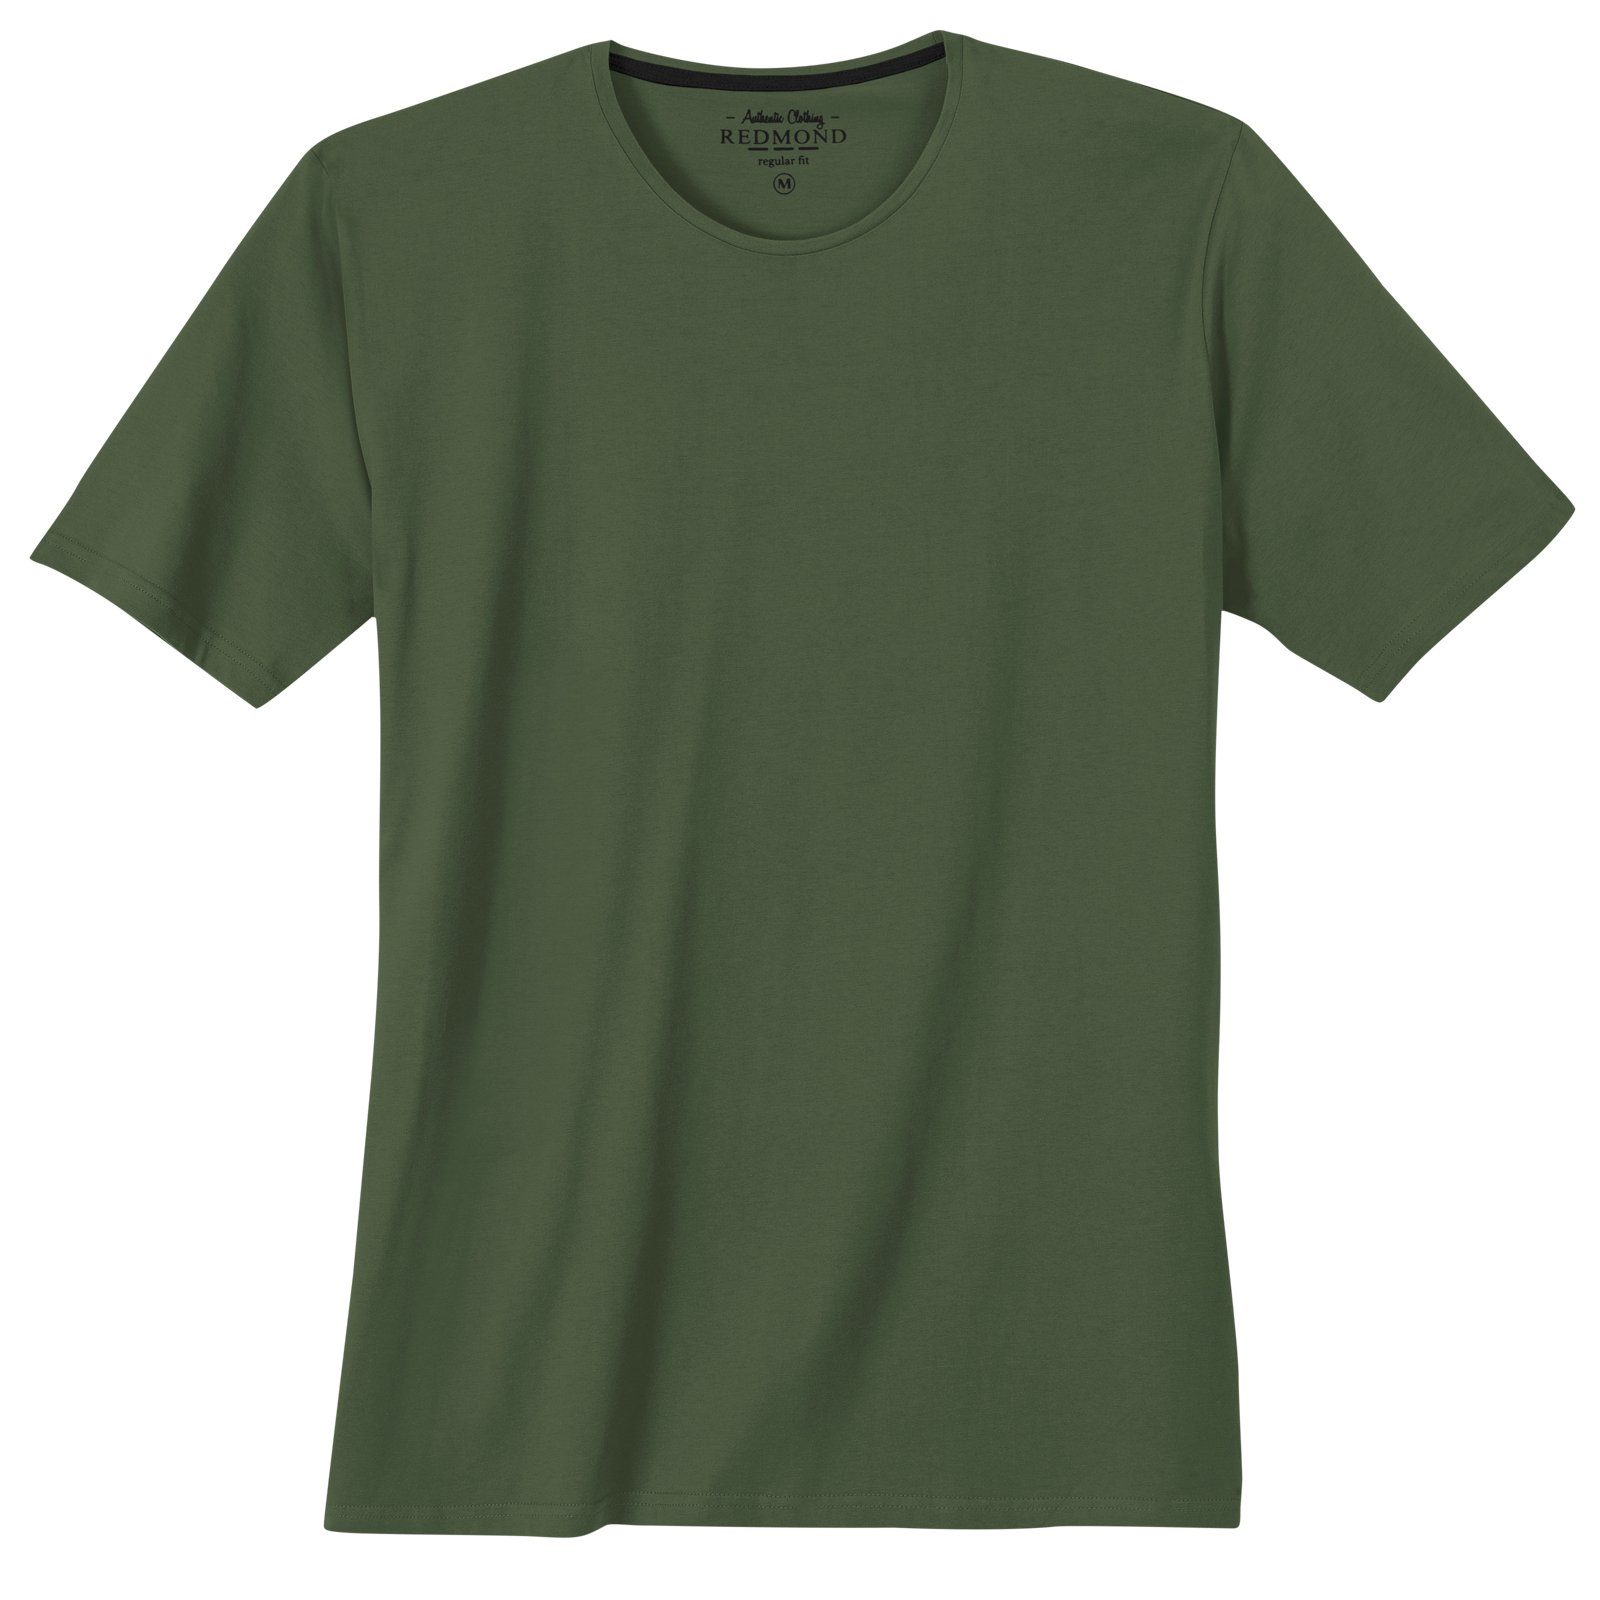 T-Shirt Basic olivgrün Übergrößen Redmond Rundhals Rundhalsshirt Redmond